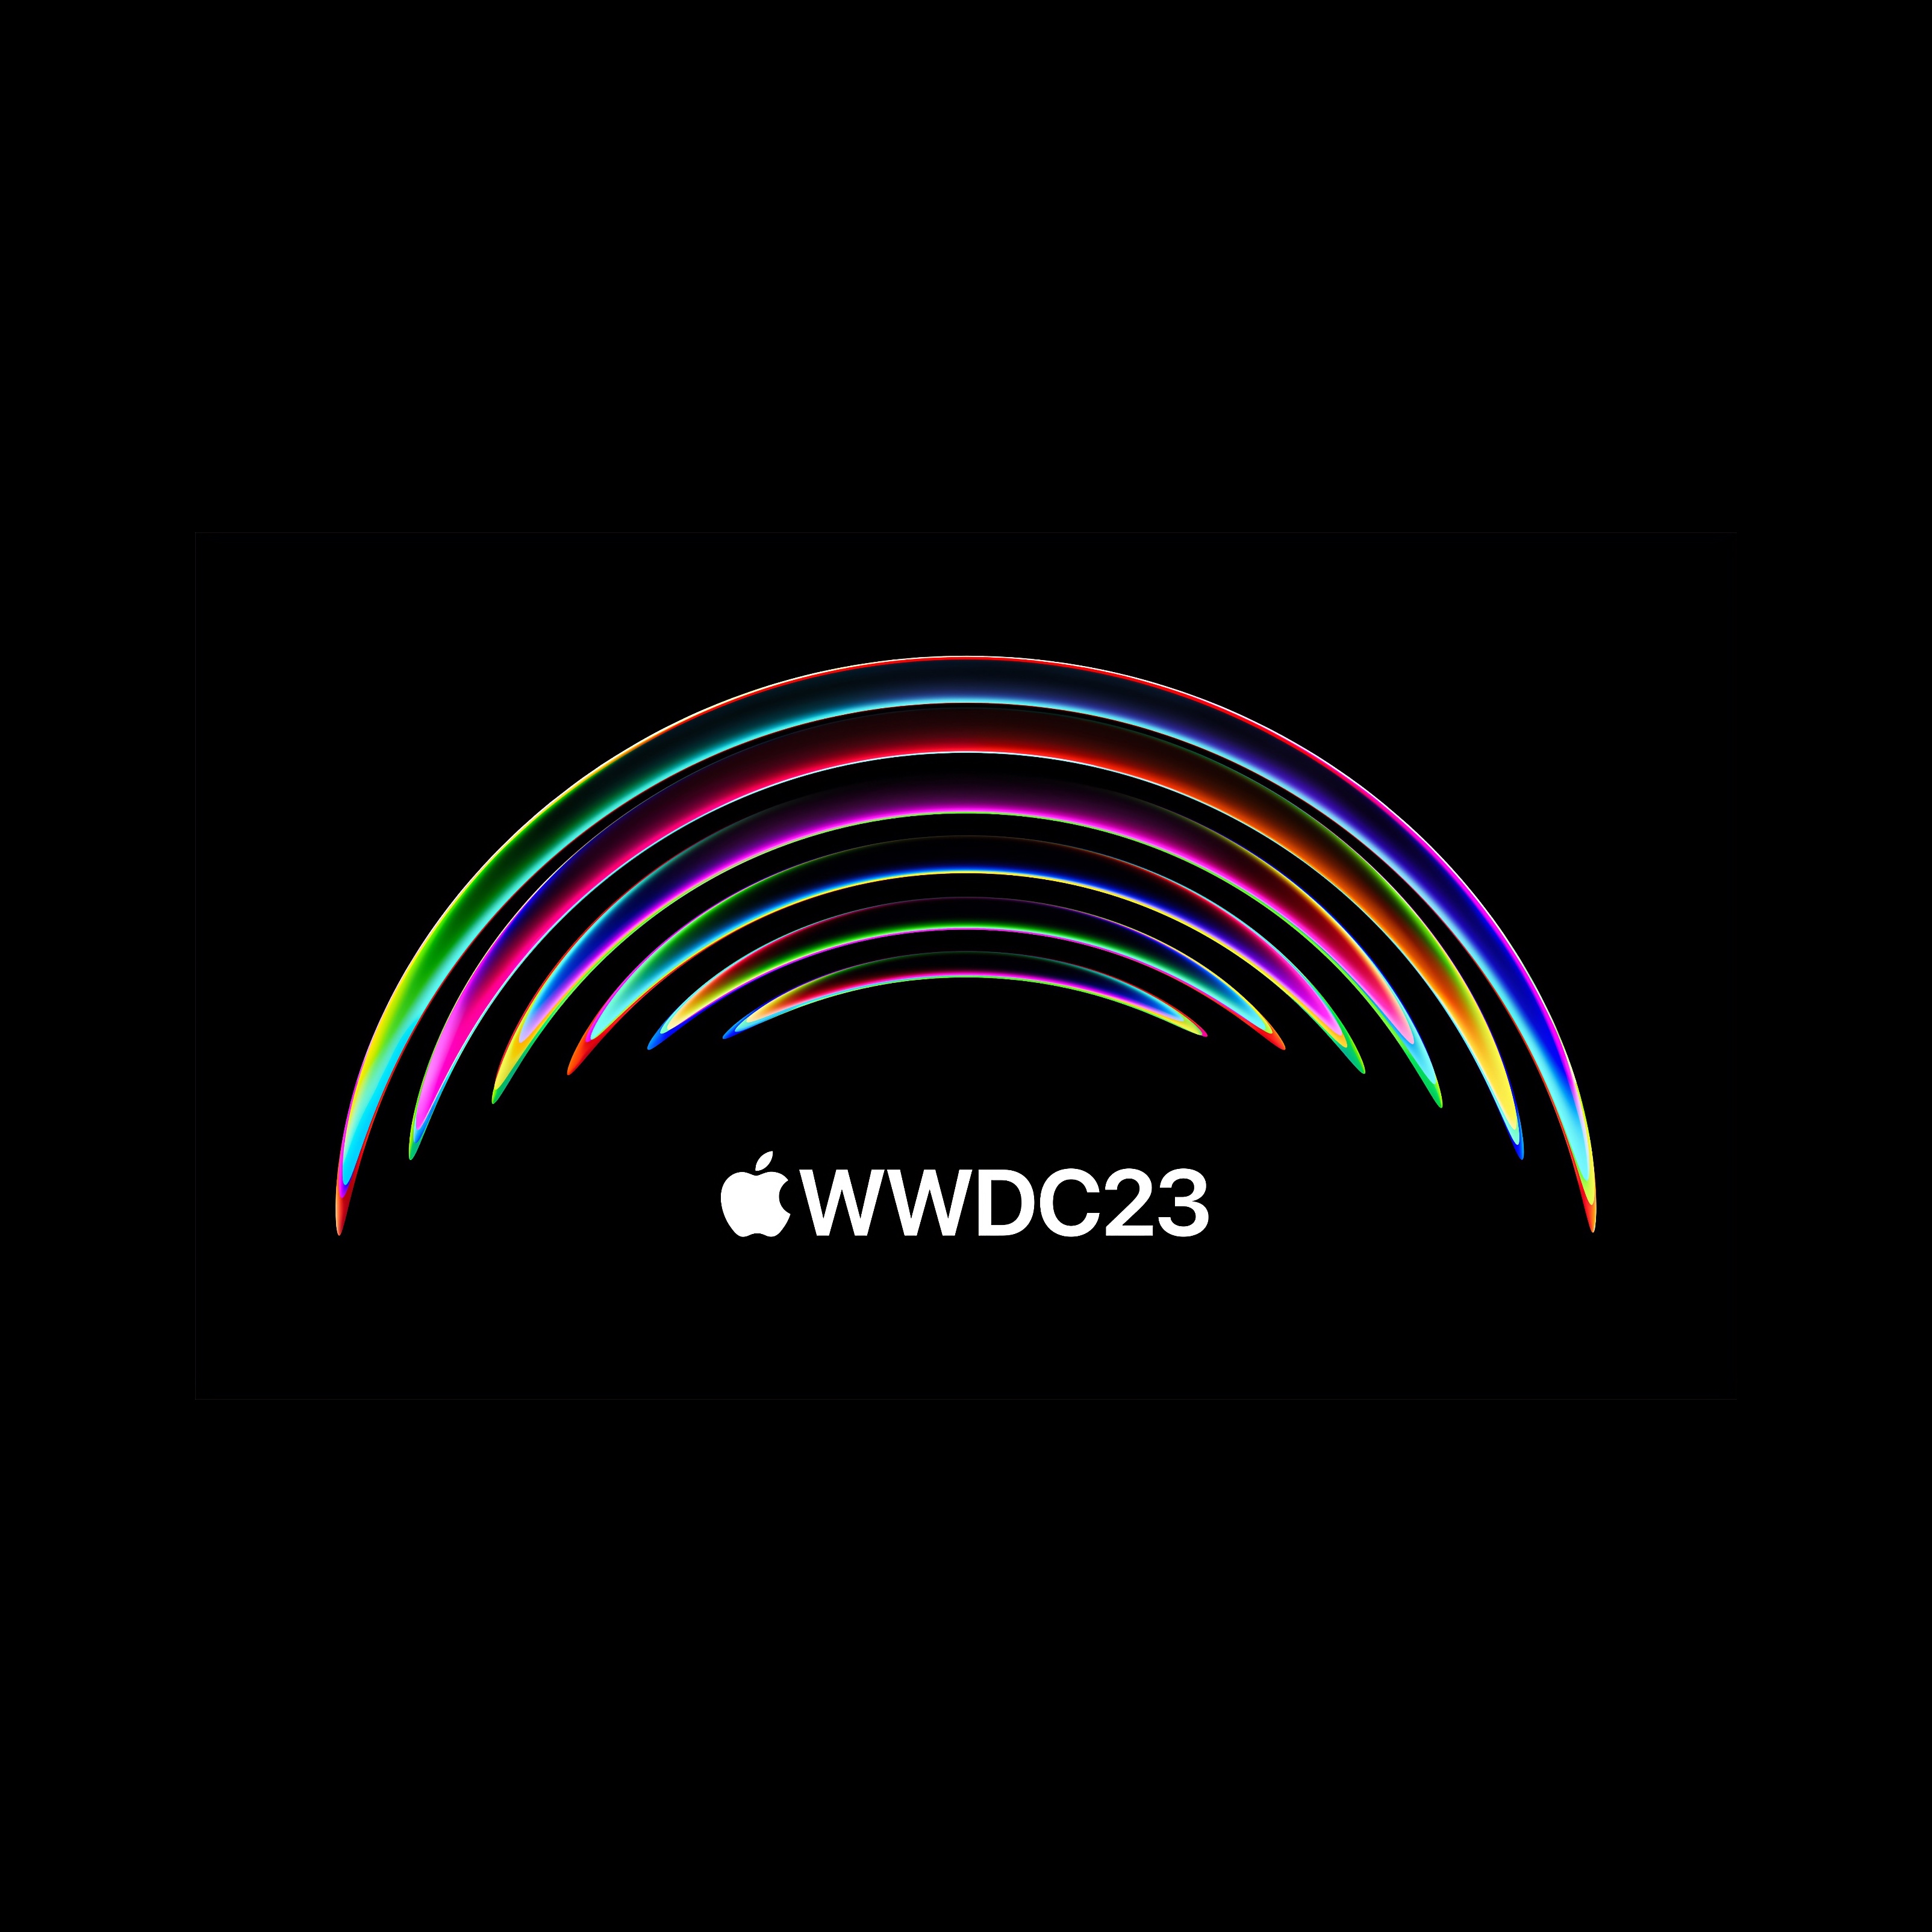 À télécharger : le fond d'écran spécial WWDC 2023